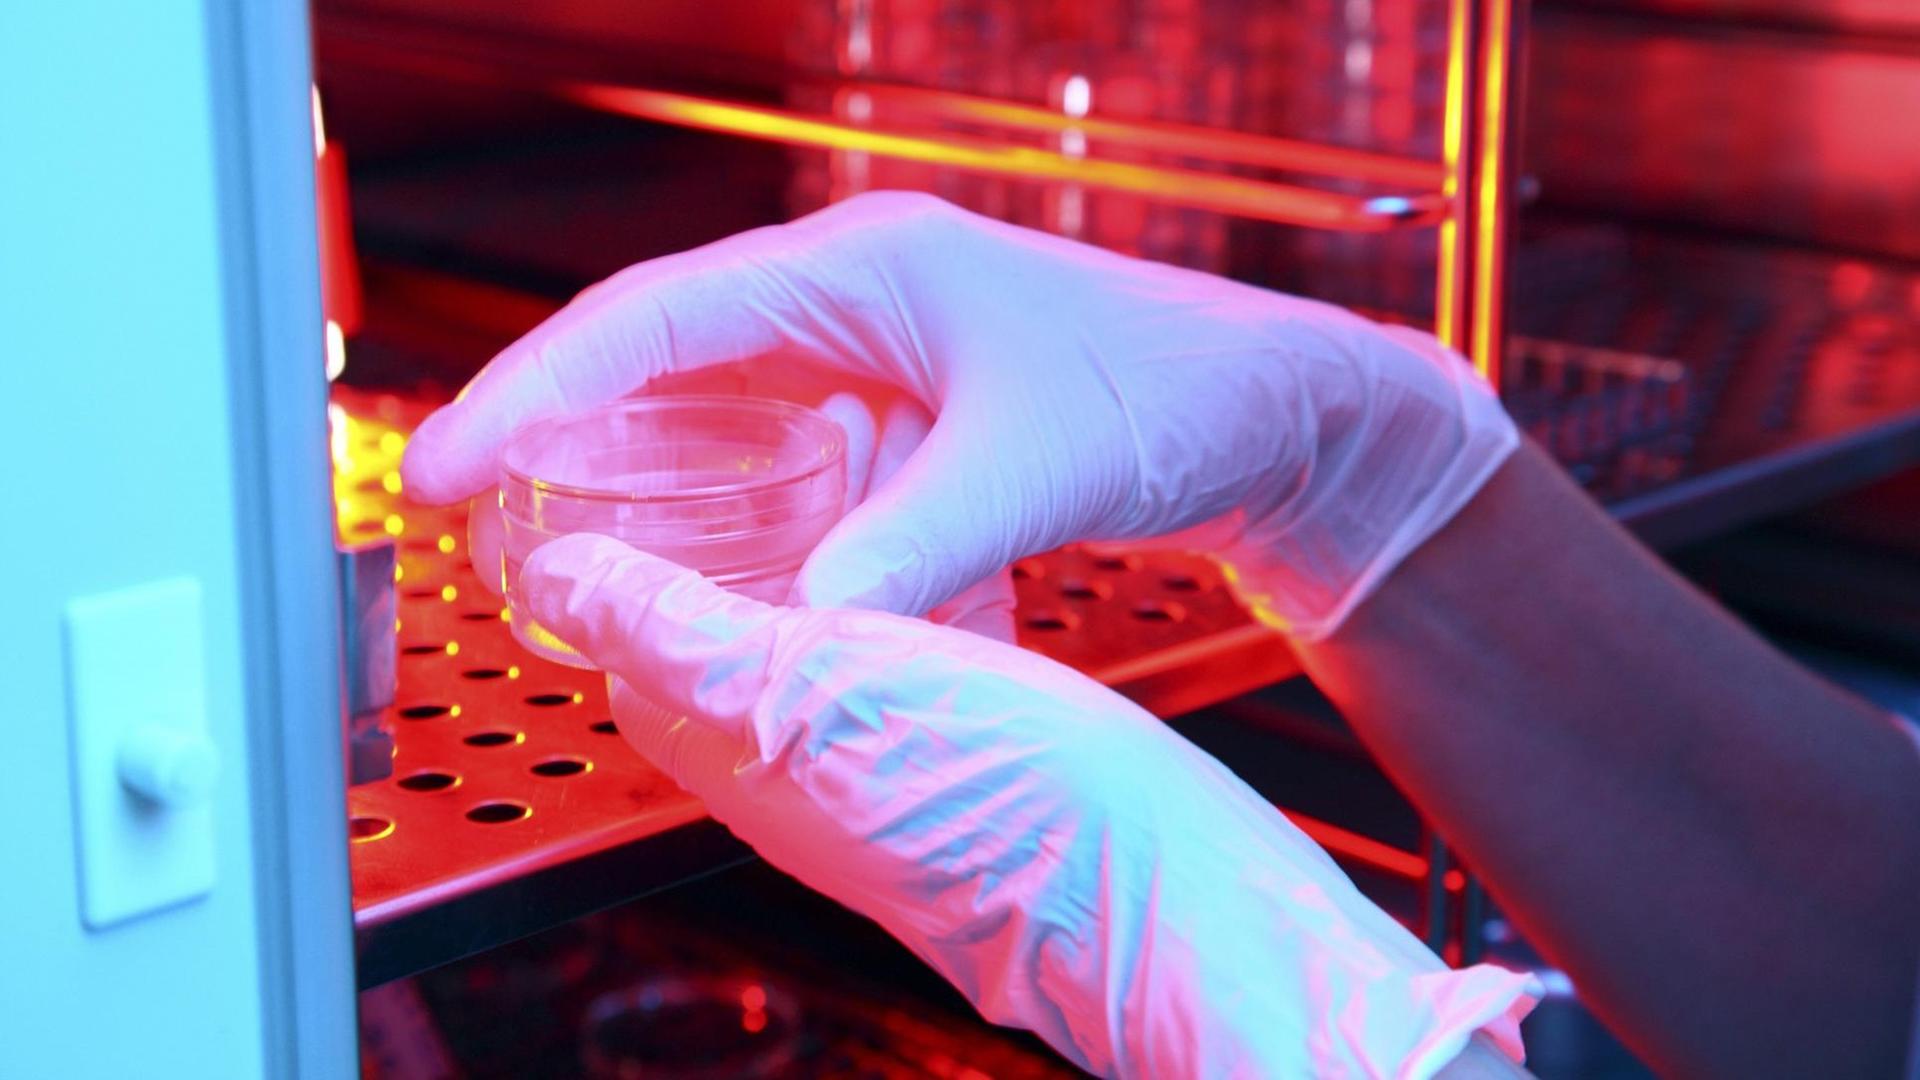 Zu sehen sind die Hände eines Wissenschaftlers, gehüllt in weiße Gummihandschuhe. Er oder sie legt in einem Fortpflanzungslabor eine dünne Glasschale mit weiblichen Eizellen in einen Wärmeschrank.